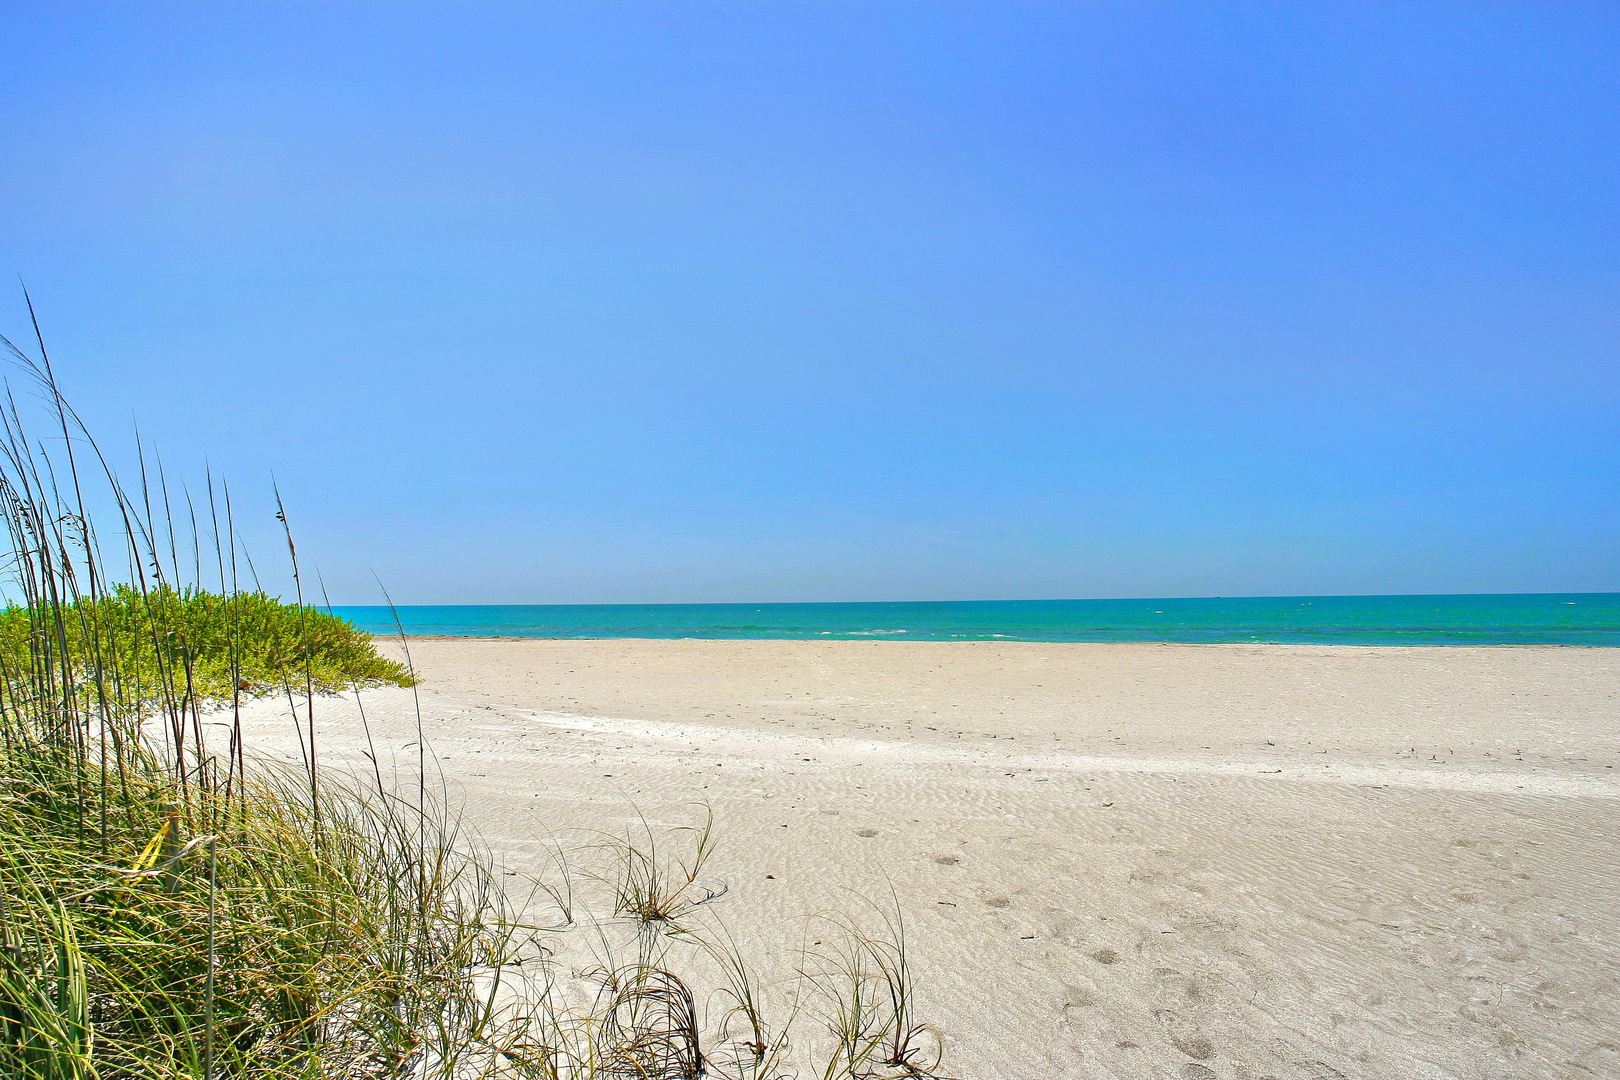 Gulf of Mexico beach alternate view